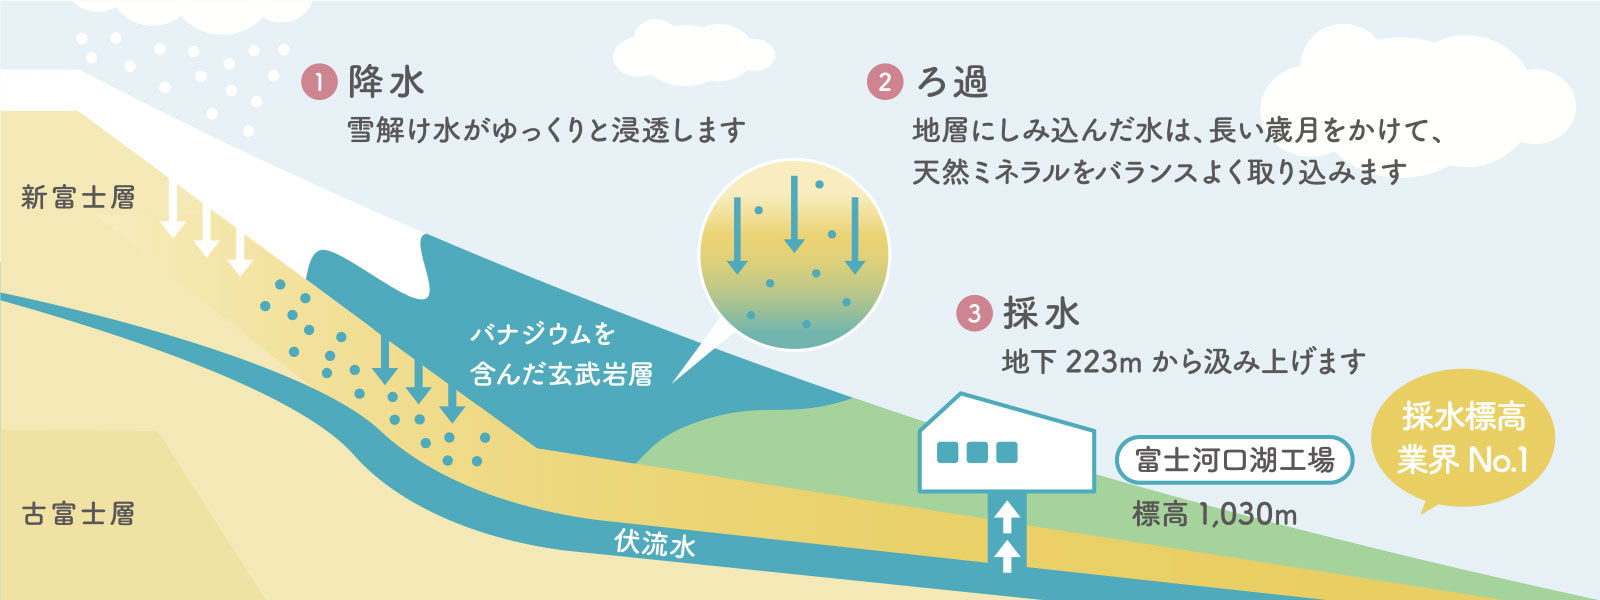 マーキュロップの天然水はまろやかな味わいの、おいしい富士山の天然水